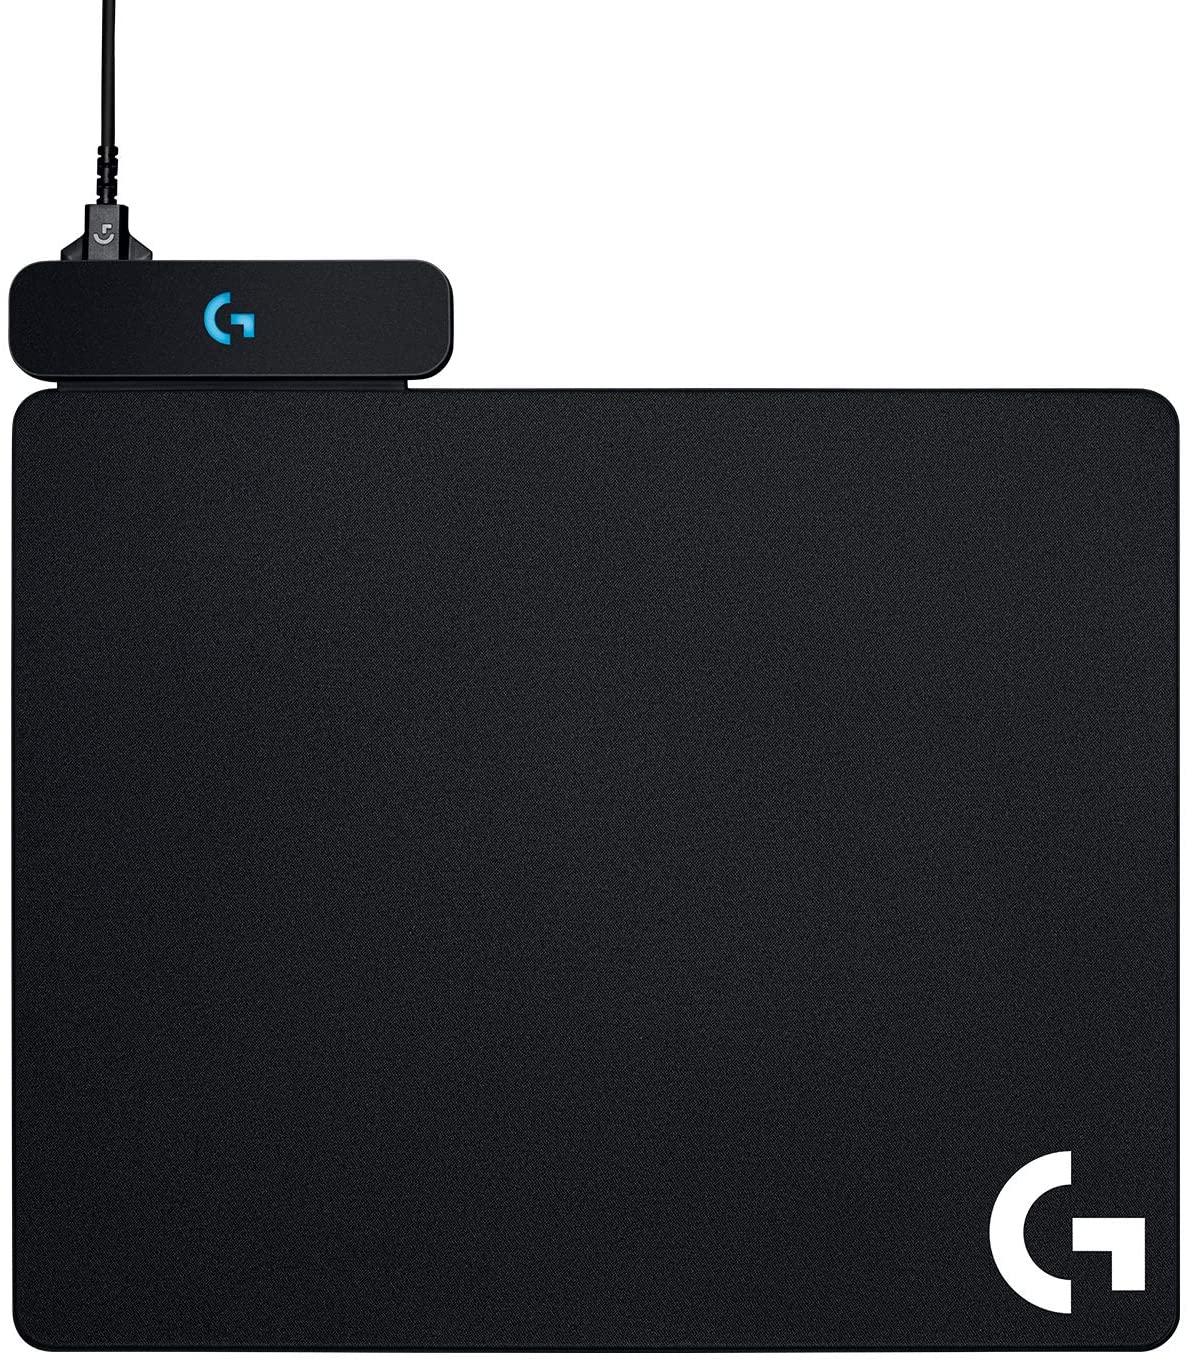 Logitech Powerplay Base con Sistema de Carga Inalambrica para Raton - Compatible con G703/G903 - Incluye 2 Alfombrillas Rigida y Flexible - Iluminacion RGB del Logotipo - 32x34x0.2cm - Cable de 1.83m - Color Negro